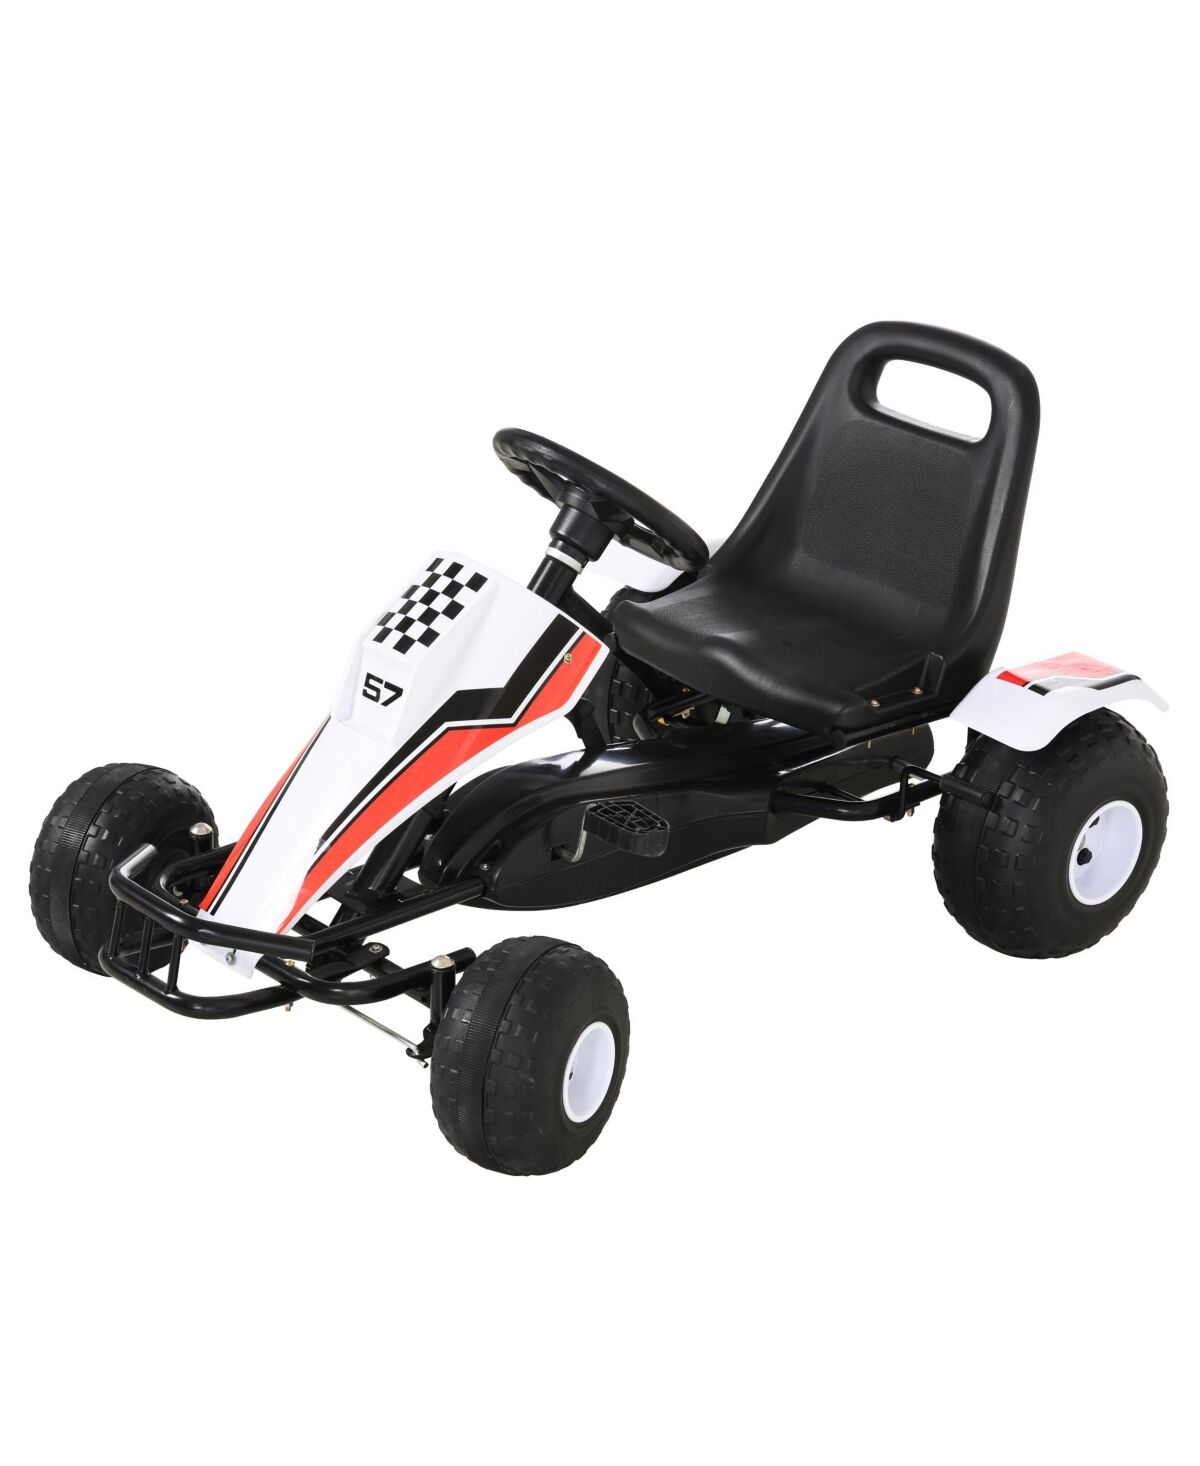 Aosom Pedal Go Kart Children Ride on Car w/ Adjustable Seat, Plastic Wheel - White